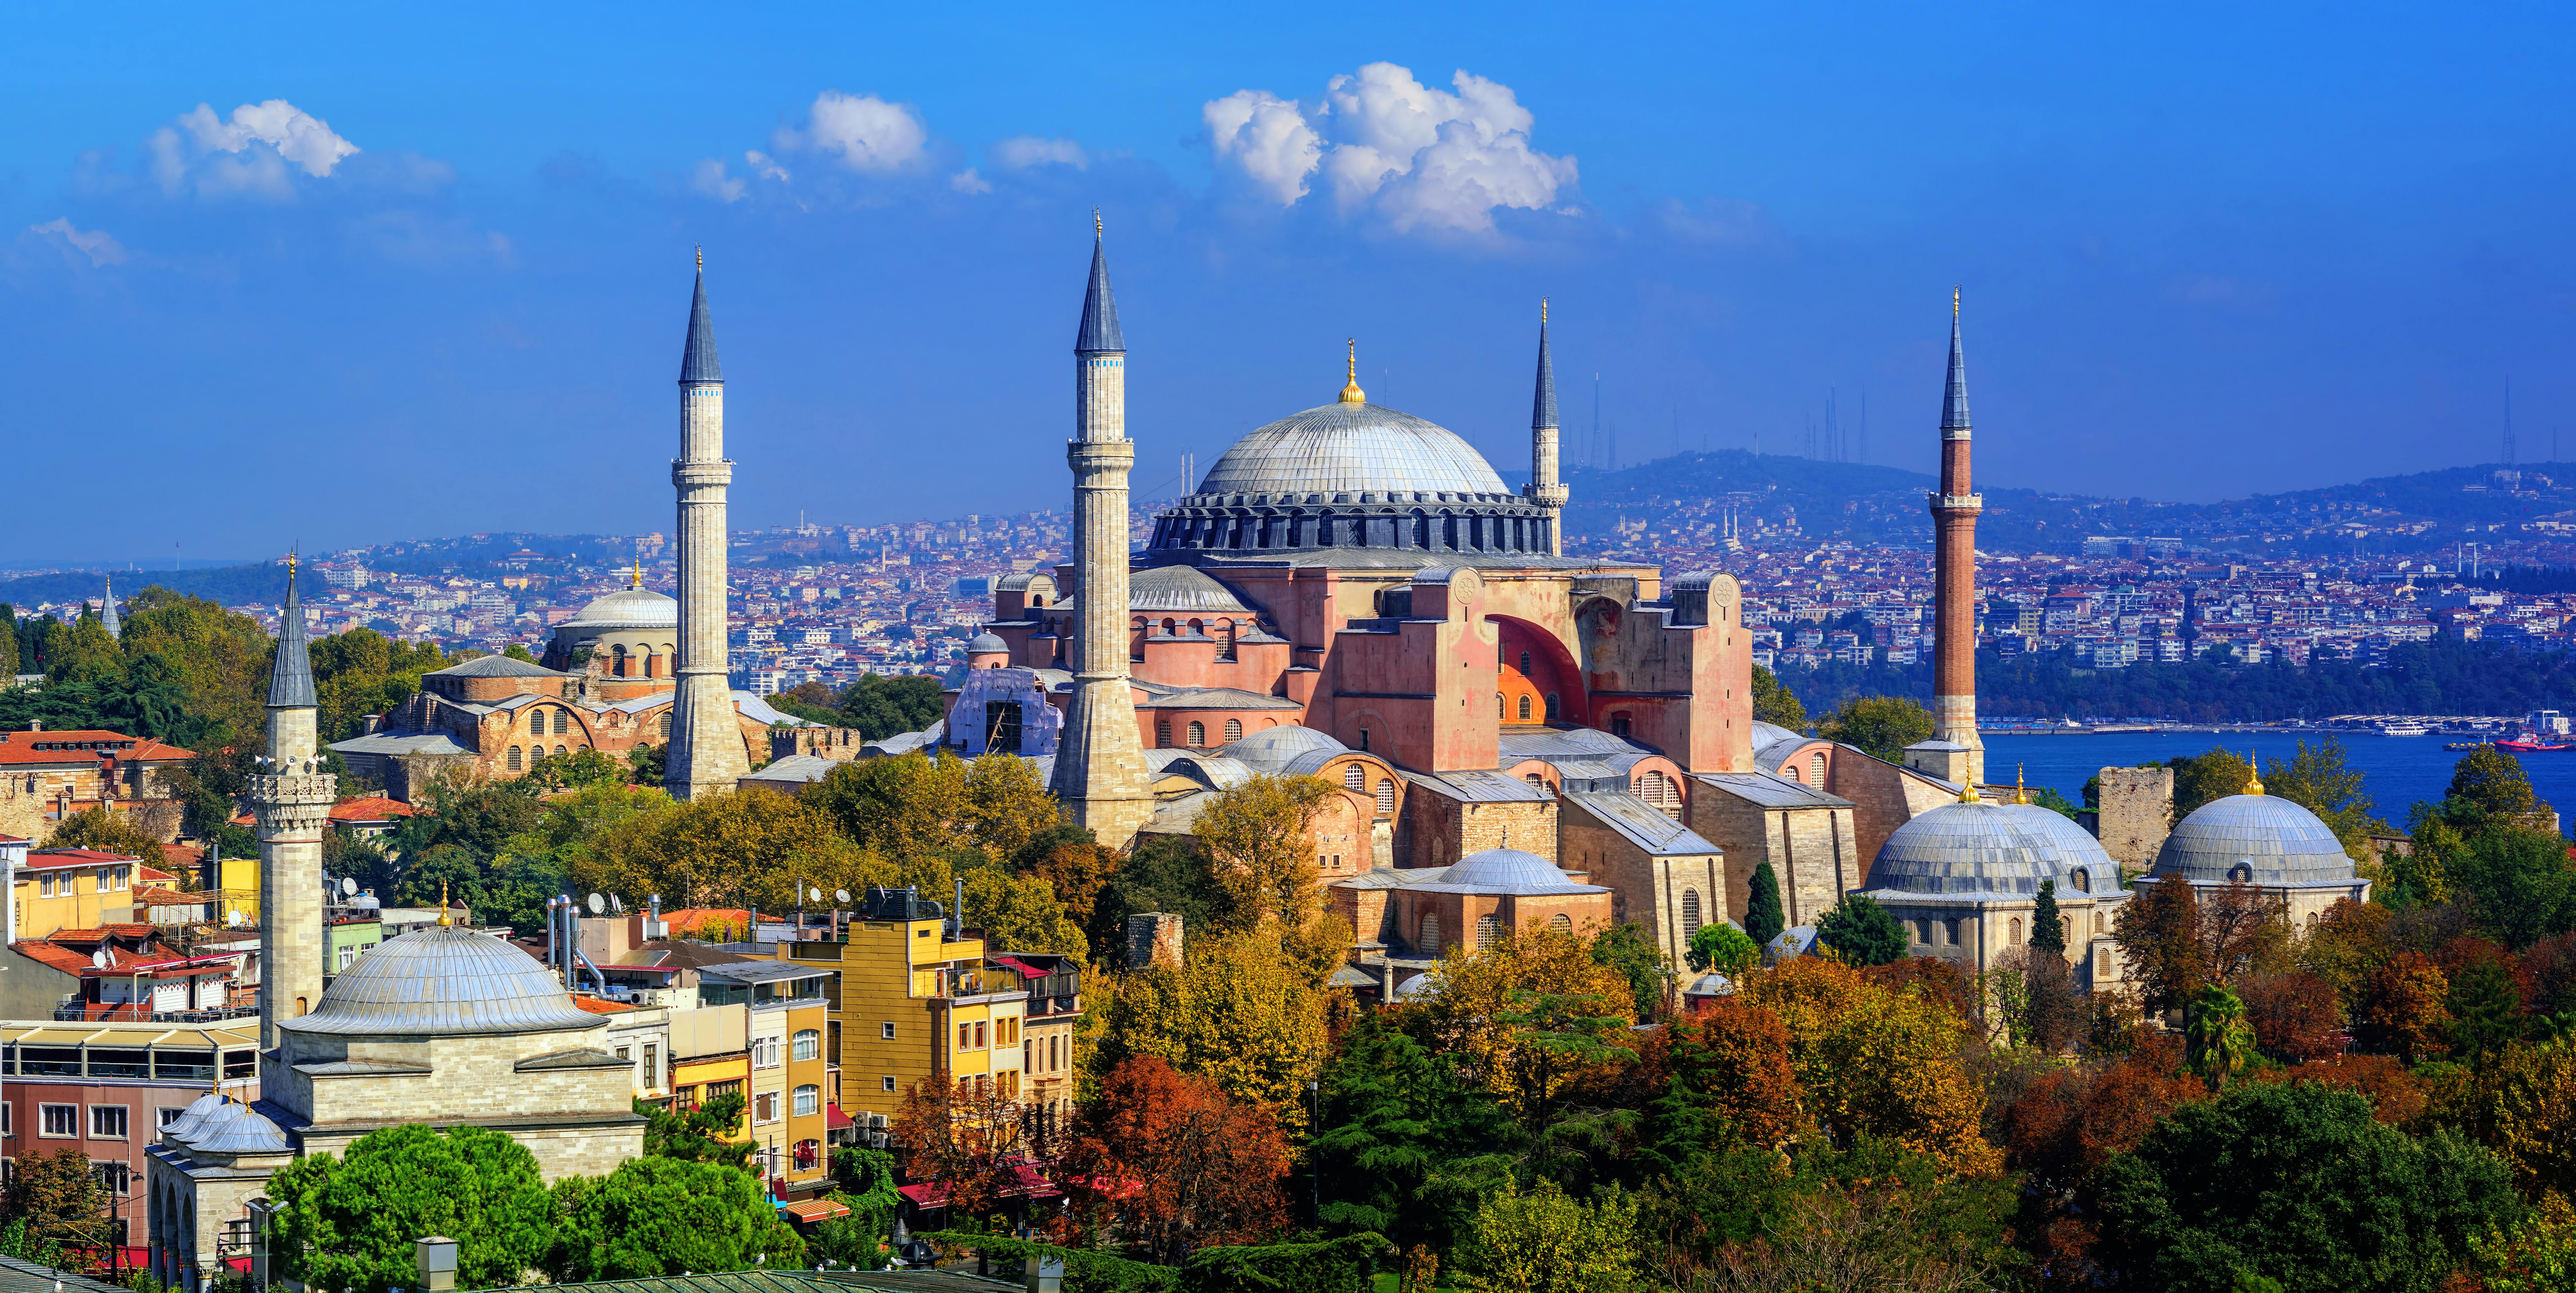 Discover Hagia Sophia Topkapi Palace and Basilica Cistern Istanbul tour Musement